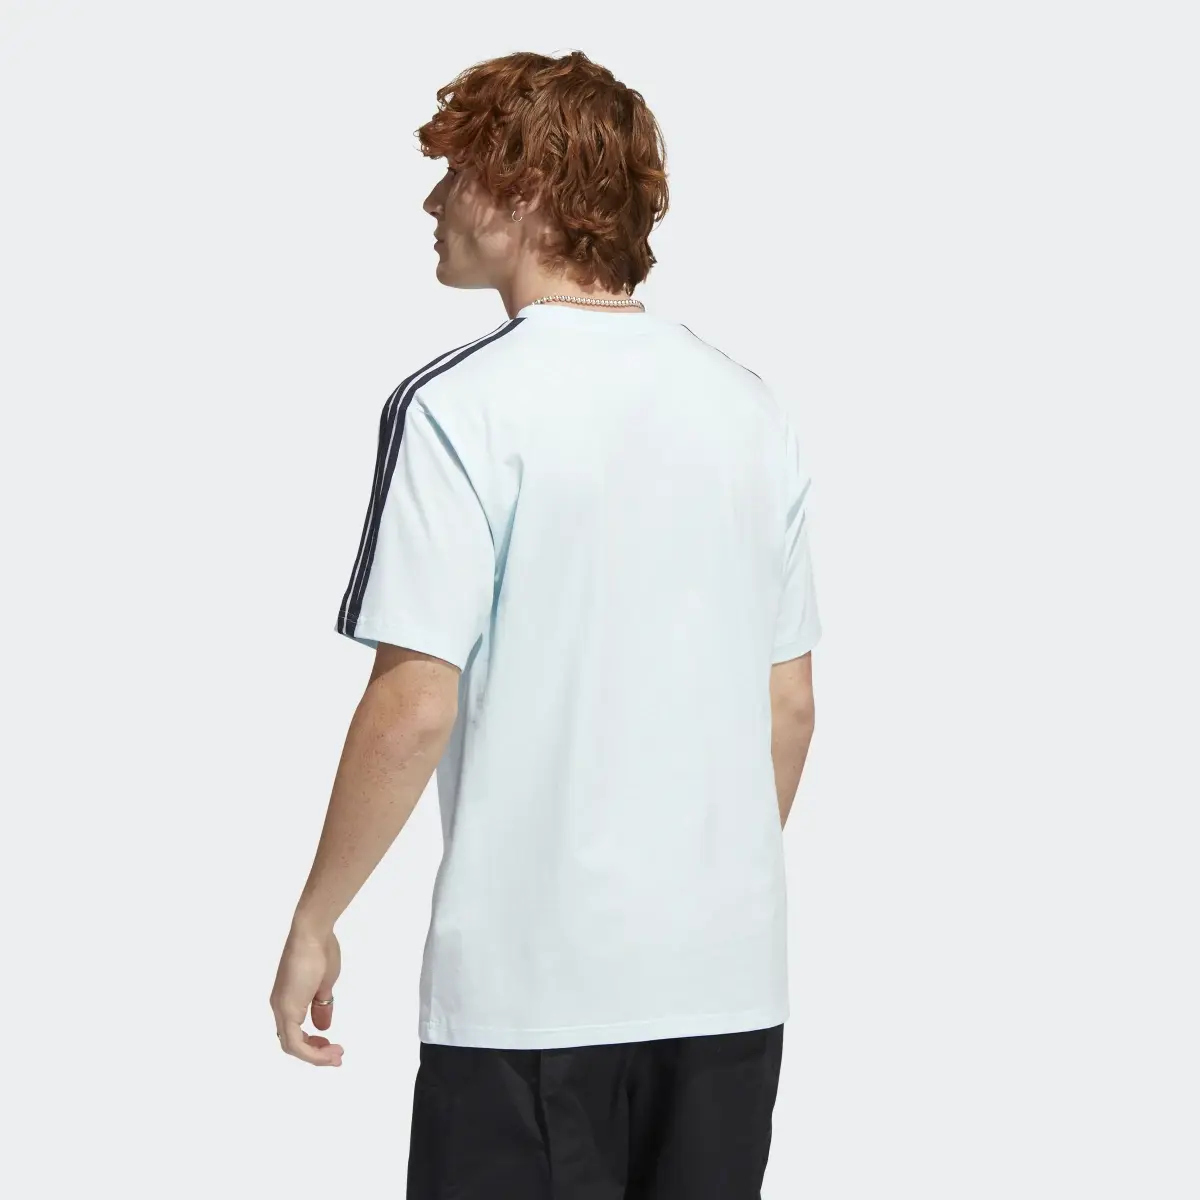 Adidas Original Athletic Club 3-Stripes T-Shirt. 3